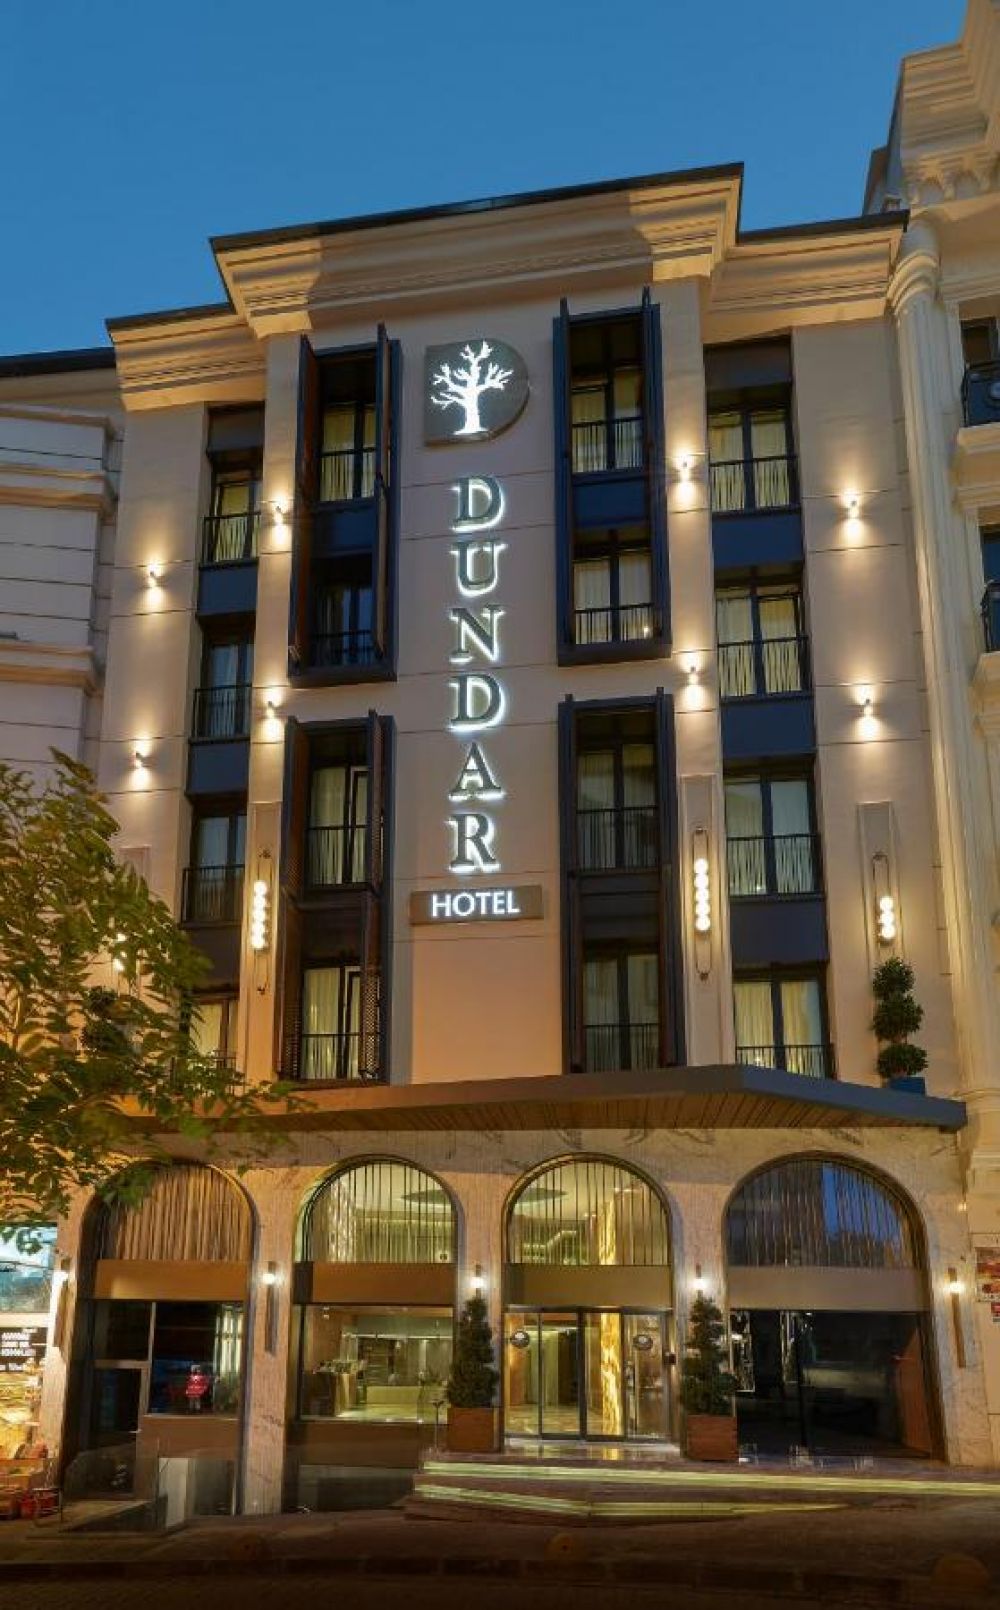 Dundar Hotel 3*